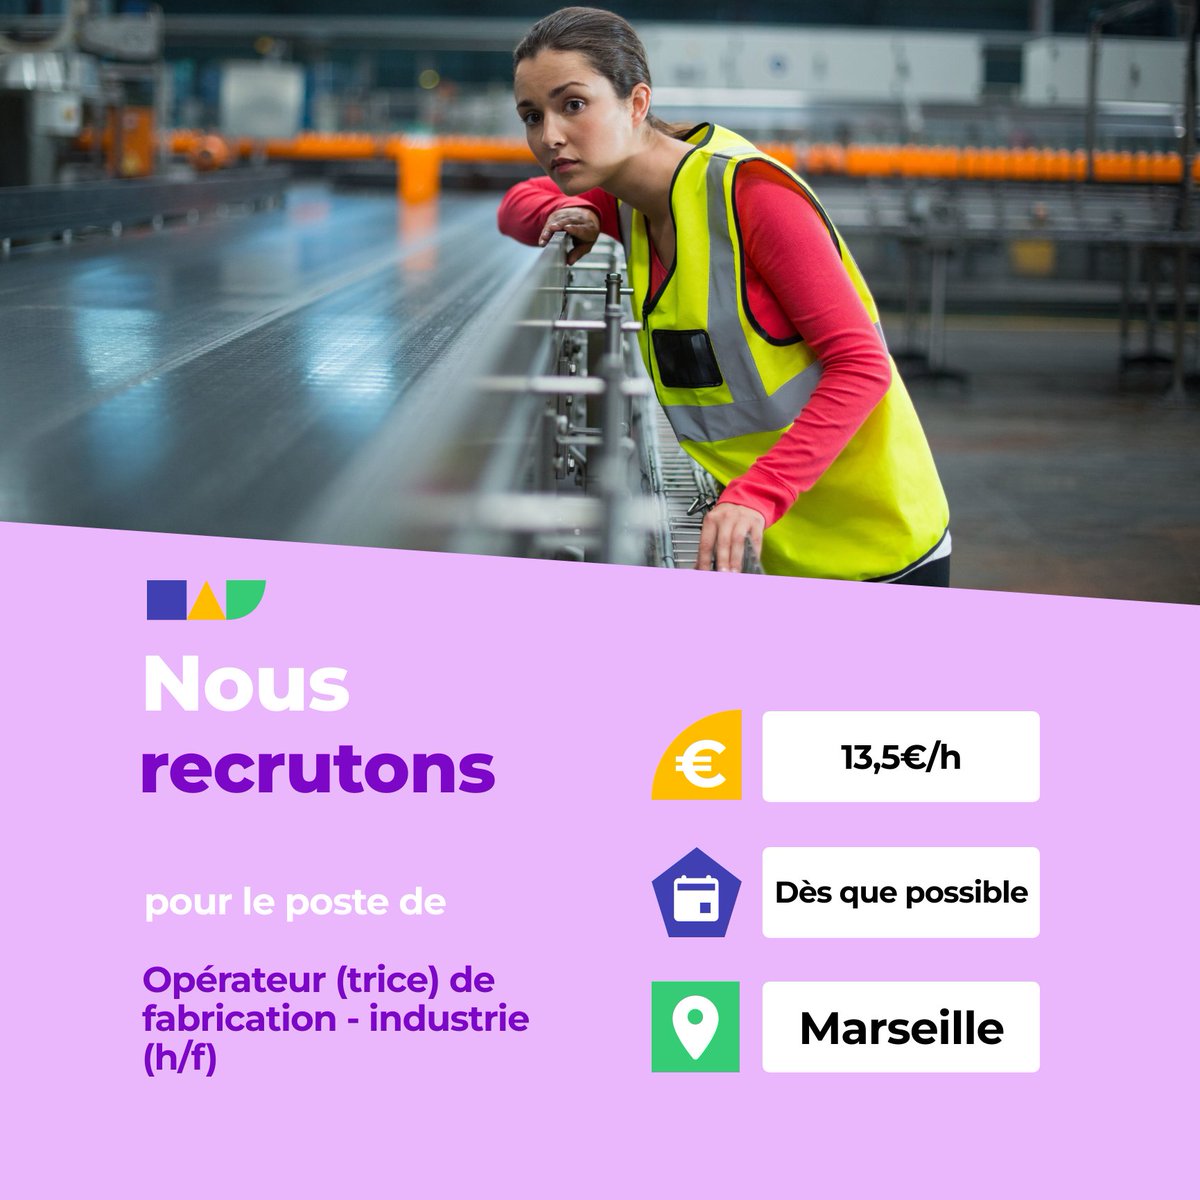 🛎️ Nouvelle offre d'emploi : Opérateur (trice) de fabrication - industrie (h/f) 🌎 Marseille (13016) 📅 Démarrage dans les 7 prochains jours 👉 Plus d'infos : jobs.iziwork.com/fr/offre-emplo… #recrutement #intérim #emploi #OffreEmploi #job #iziwork